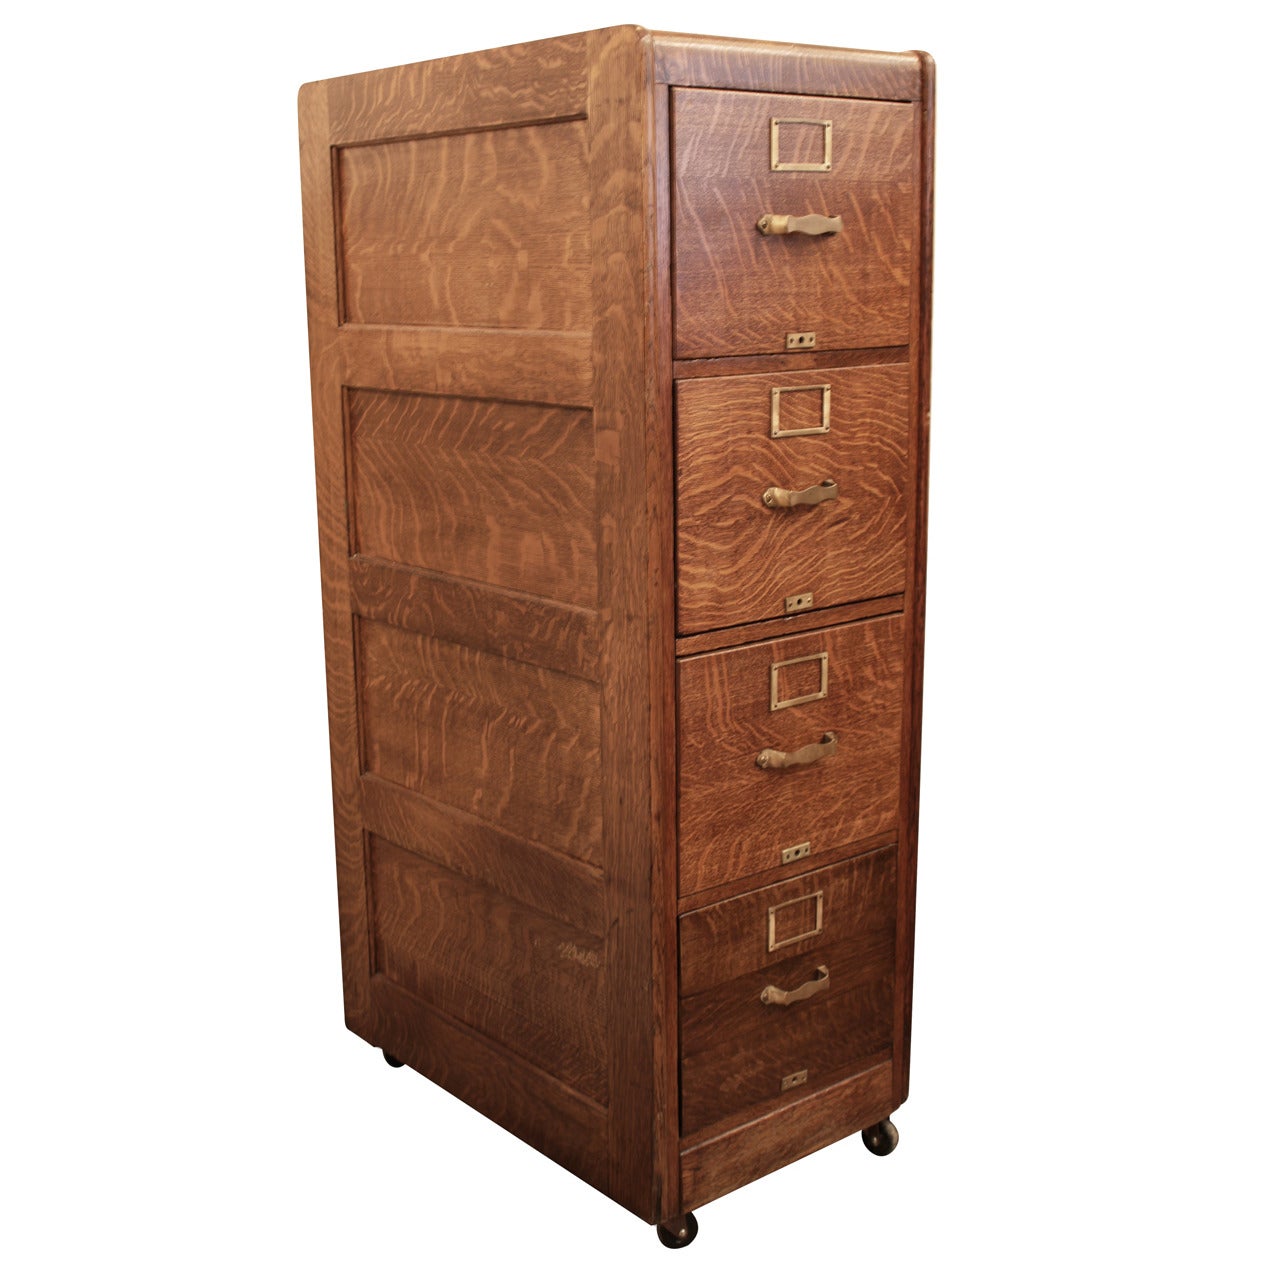 Tiger Oak Four Drawer File Cabinet with Original Hardware